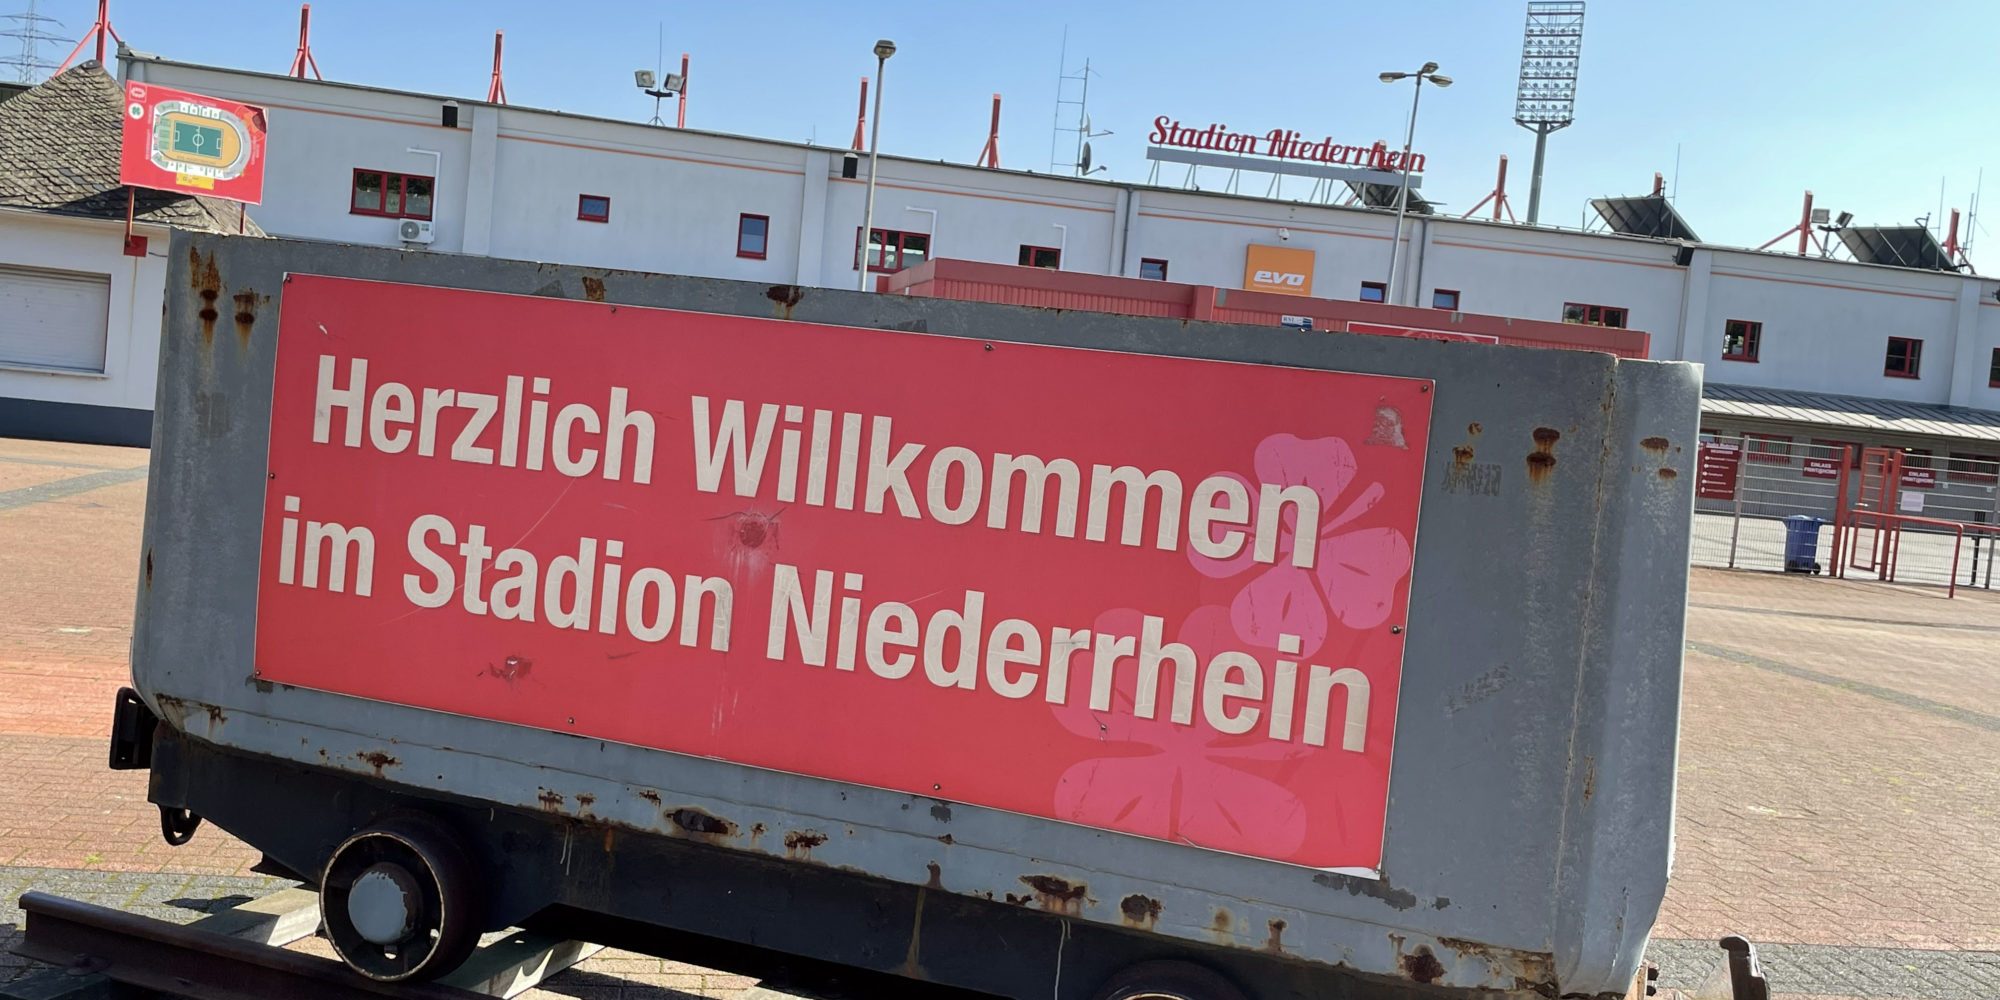 L'immagine mostra un'auto da miniera davanti allo stadio Niederrhein di Oberhausen